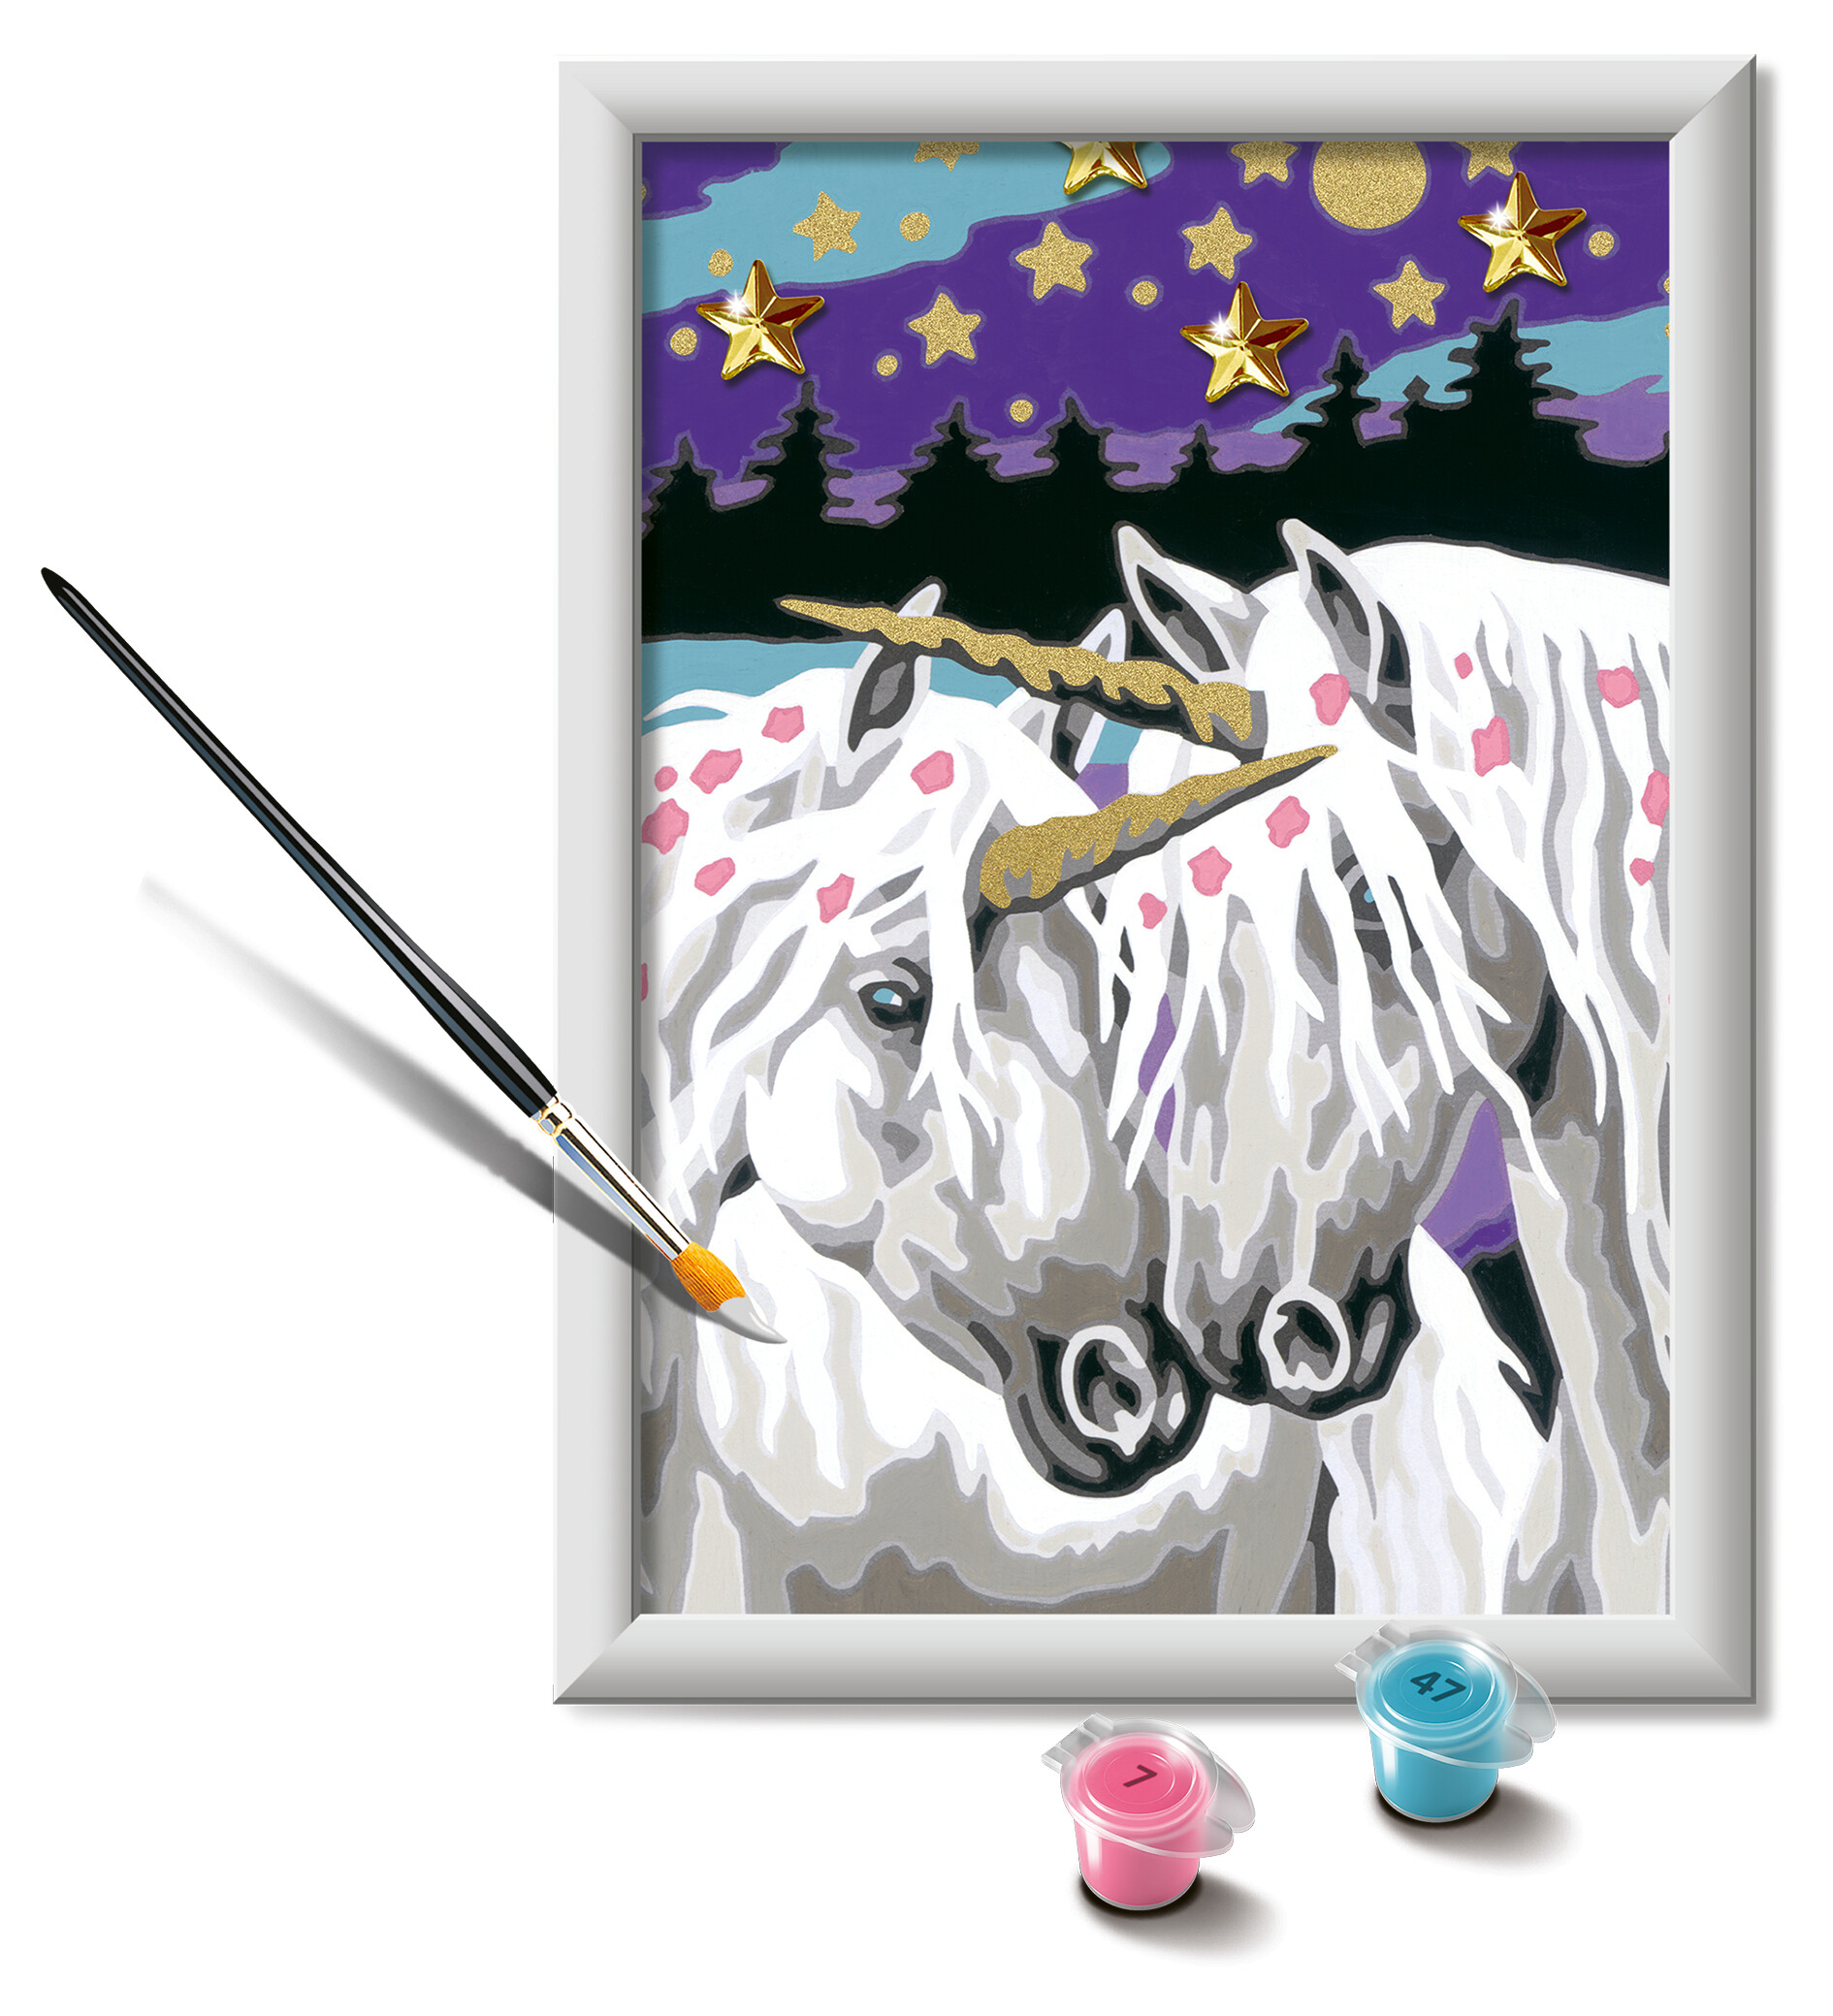 Ravensburger - creart serie e: unicorni innamorati, kit per dipingere con i numeri, contiene una tavola prestampata, pennello, colori e accessori, gioco creativo per bambini 9+ anni - RAVENSBURGER